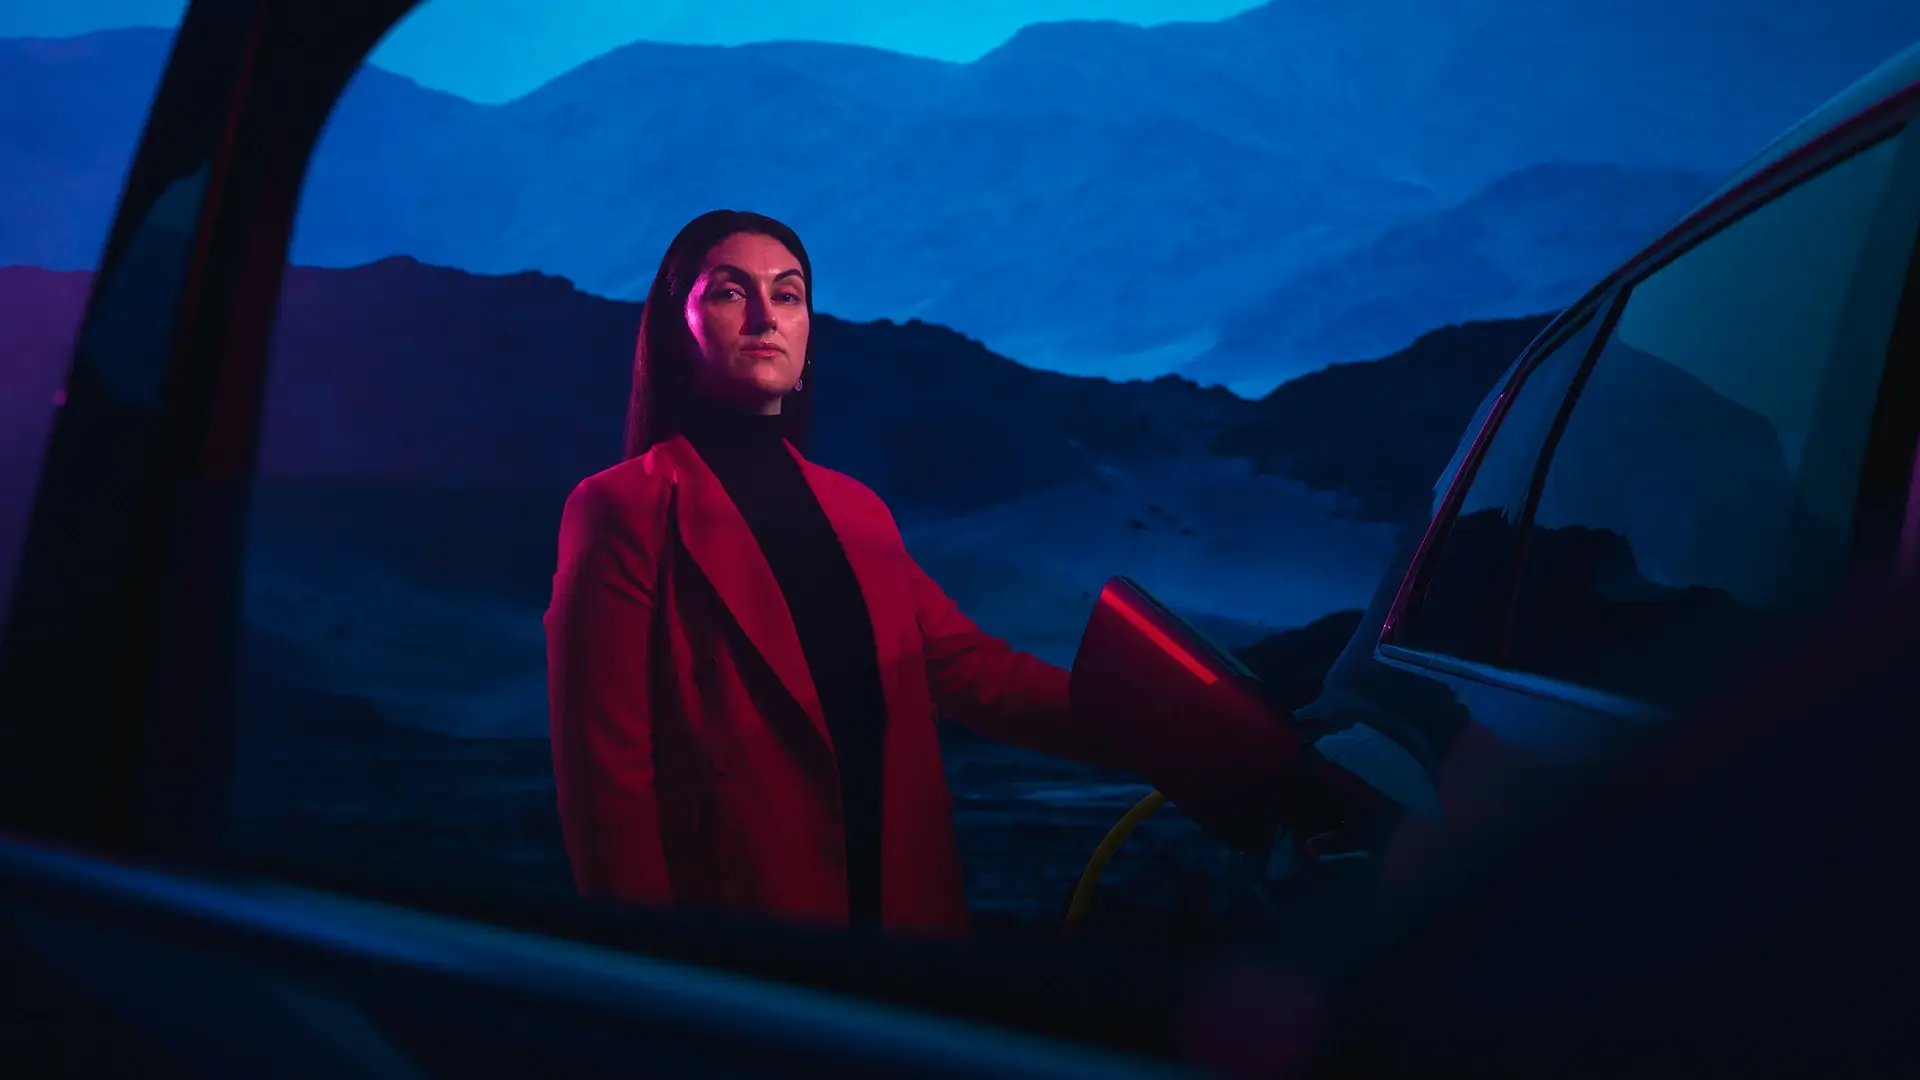 Frau im Business-Outfit lädt E-Auto vor blauen Nachthimmel und Bergkulisse